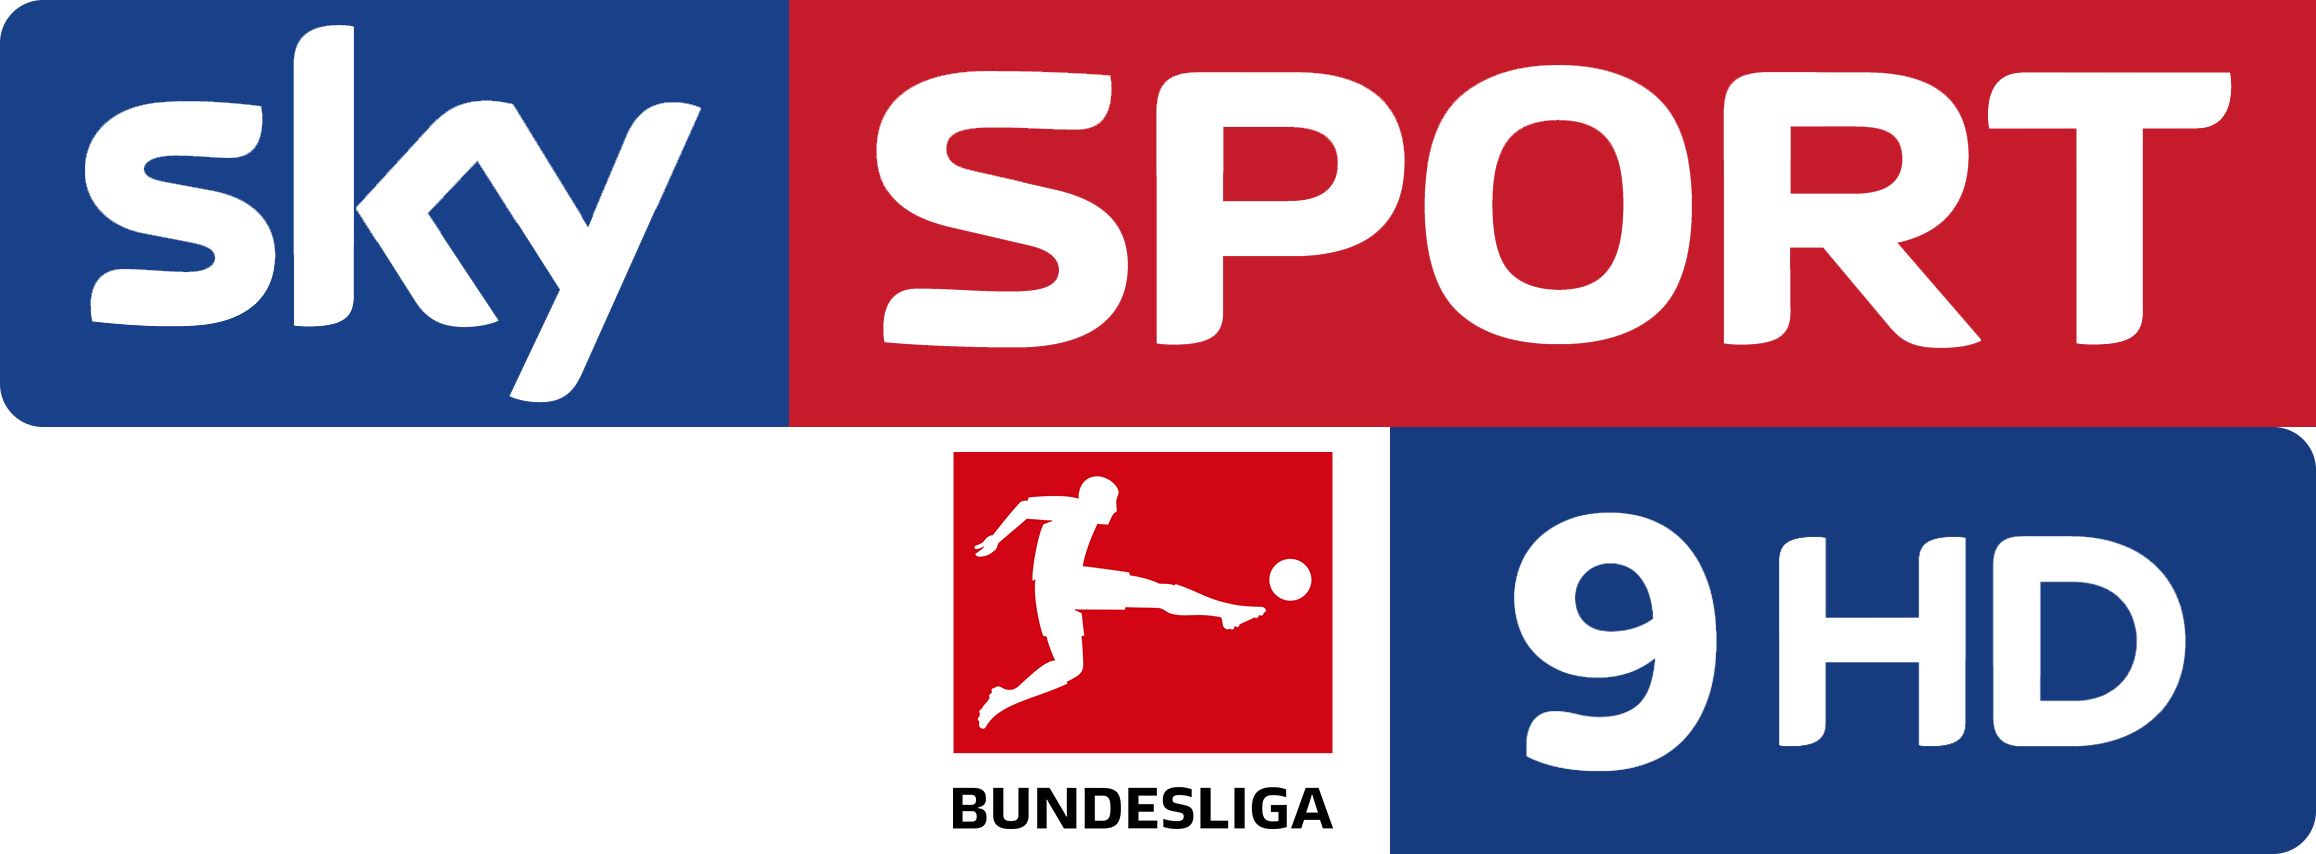 Sky Sport Bundesliga 9